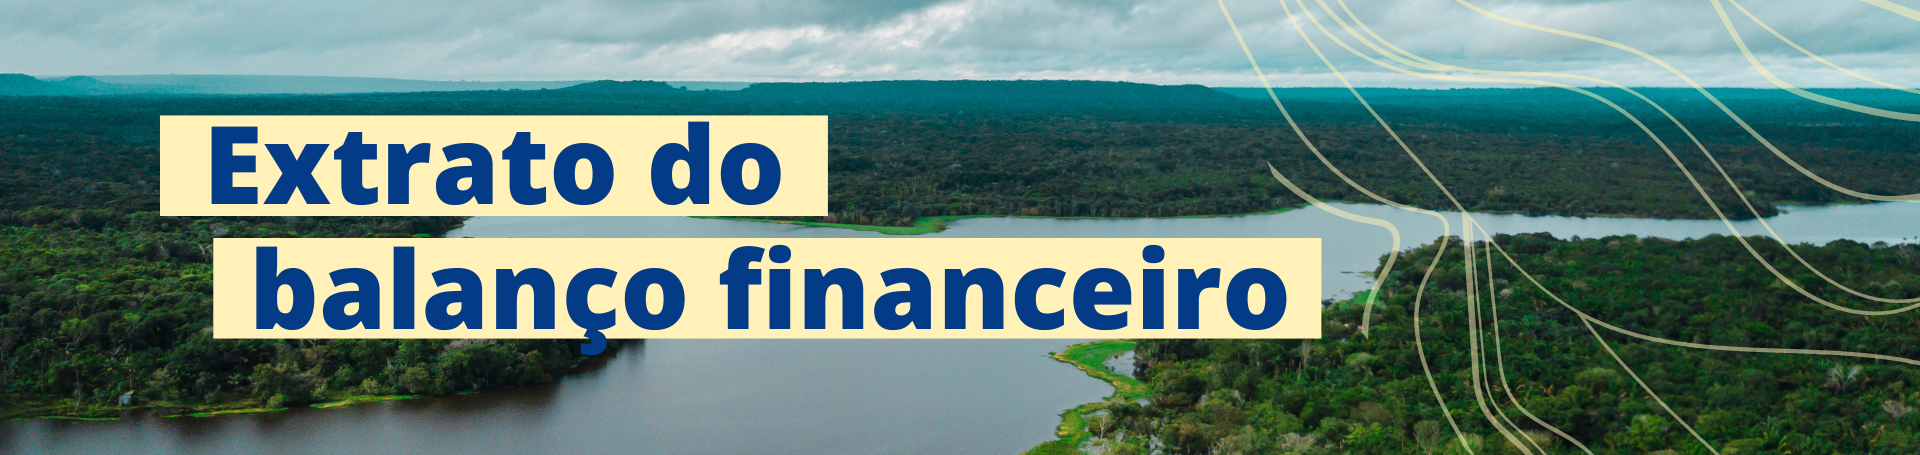 Extrato do balanco financeiro 2021 - Transparência financeira 2021